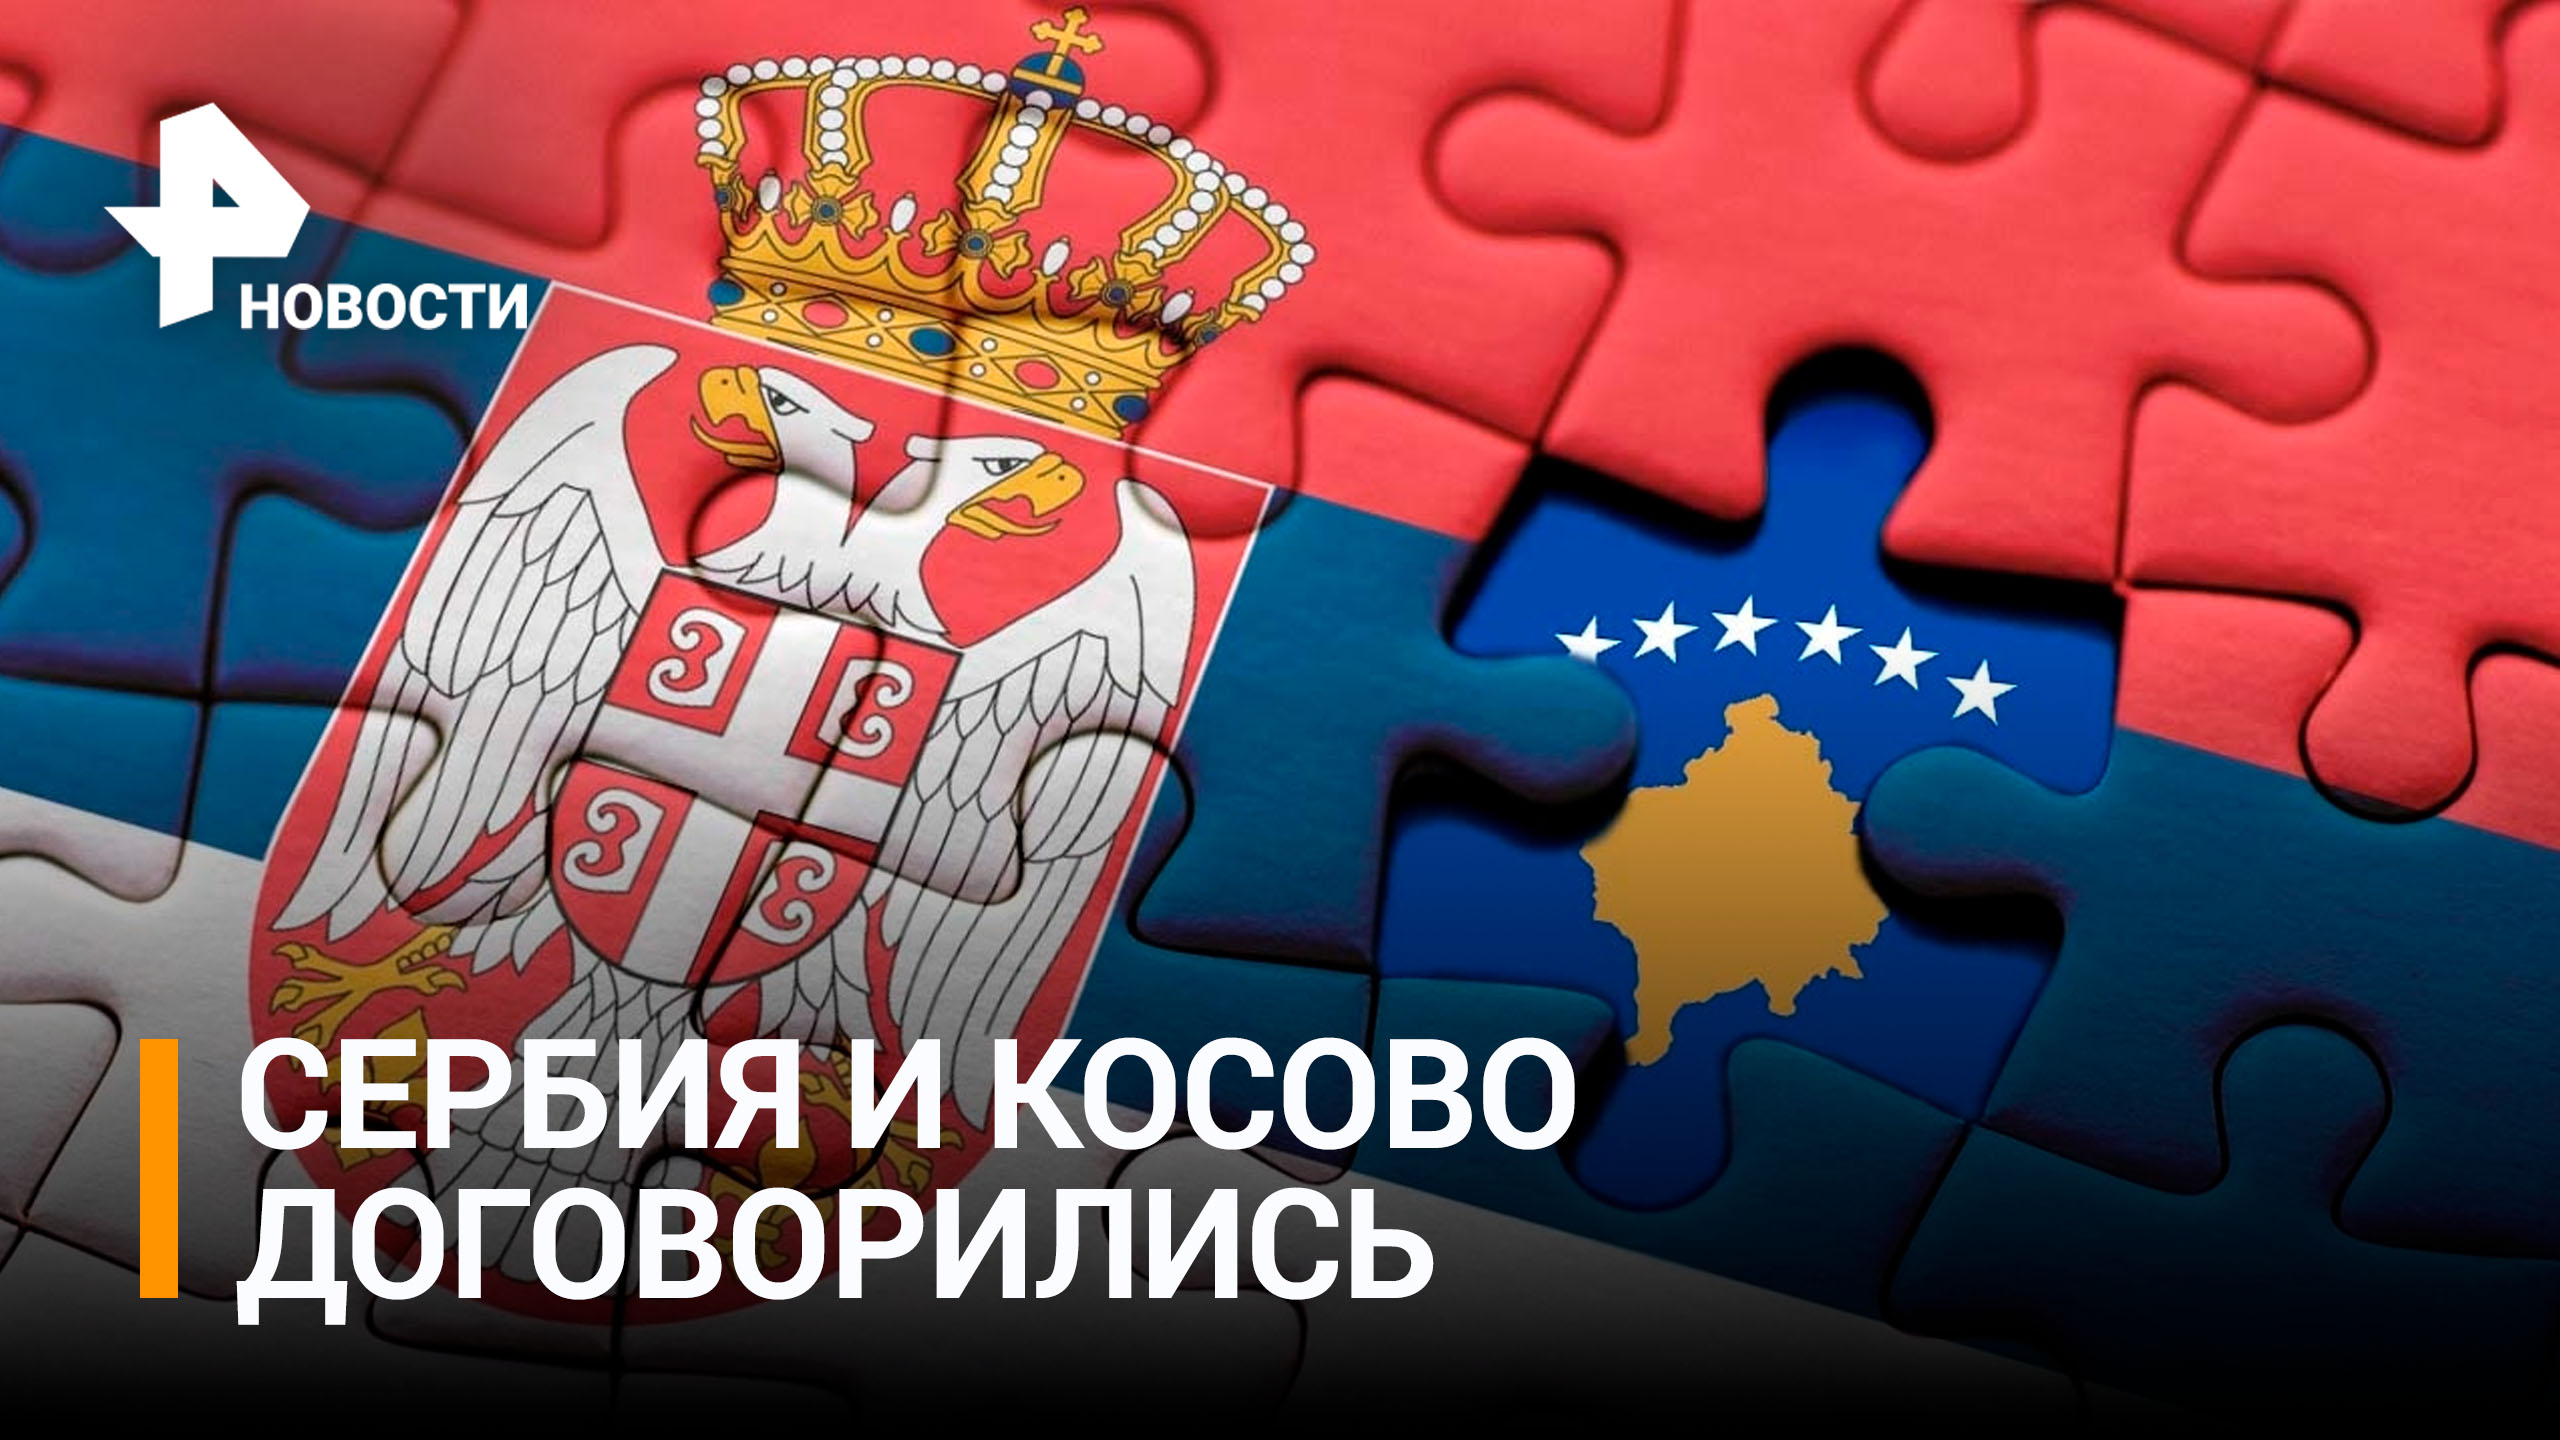 Сербия и Косово достигли соглашения по разрядке конфликта - Боррель / РЕН Новости